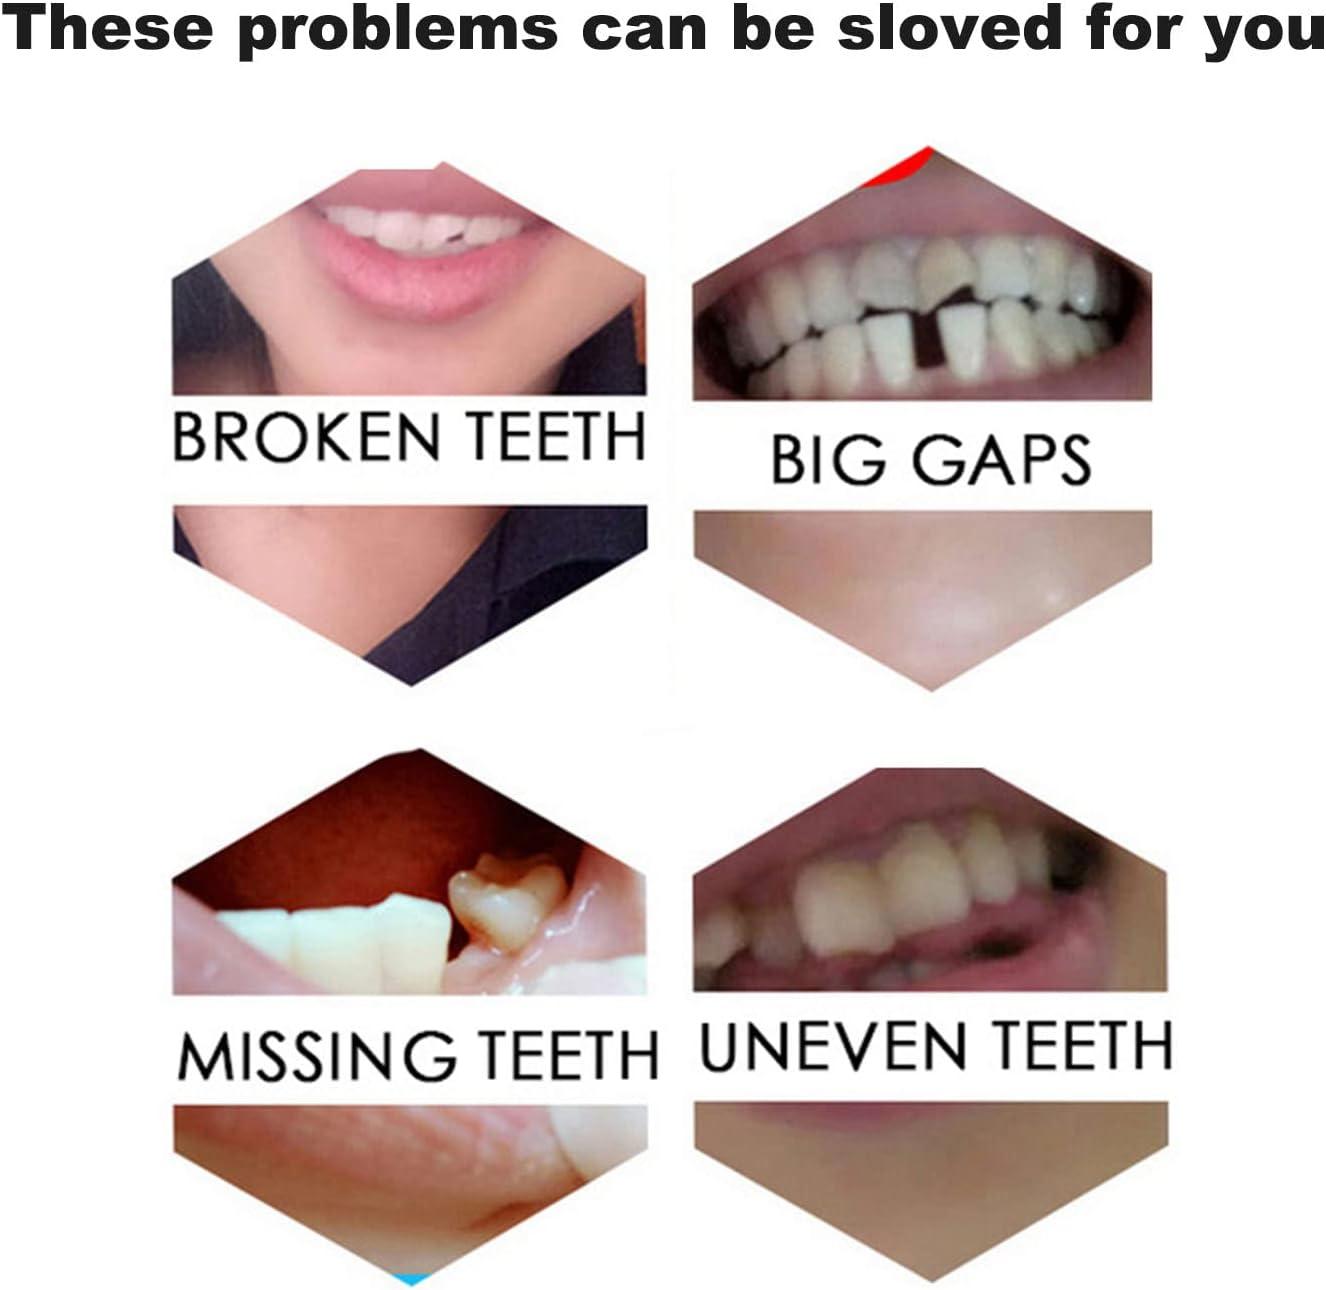 Tooth Repair Kit-Temporary Fixing Irregular & Deformity Teeth or Missing  and Broken Tooth Fake Teeth with Instant Snapping Veneers Smile Adhesive  The Denture Fake Teeth